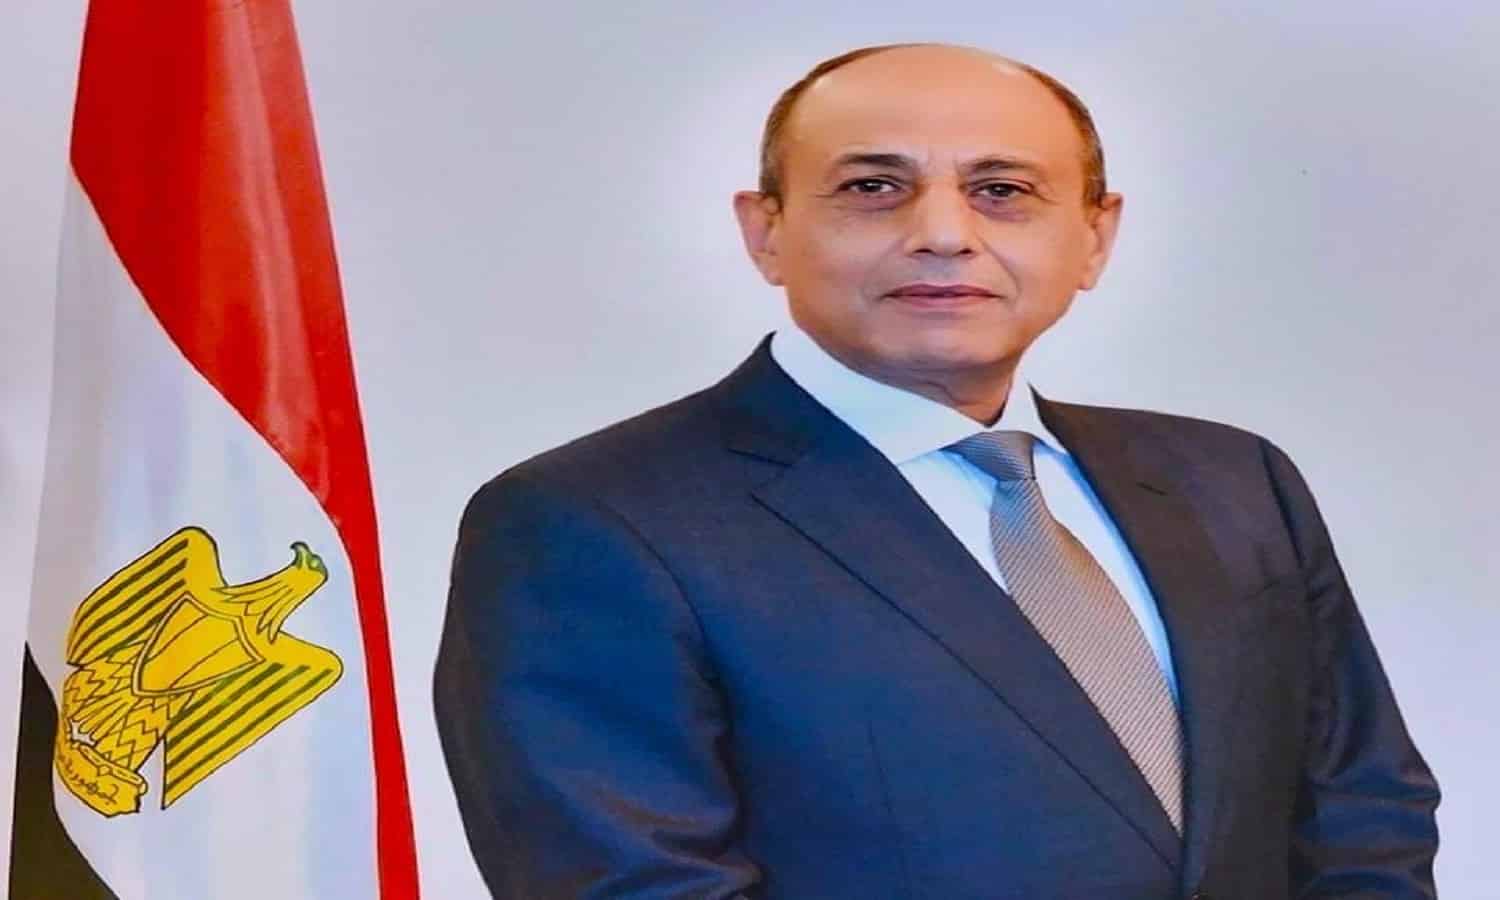 فوز مصر بمقعد بالمجلس التنفيذي للمنظمة العالمية للأرصاد الجوية